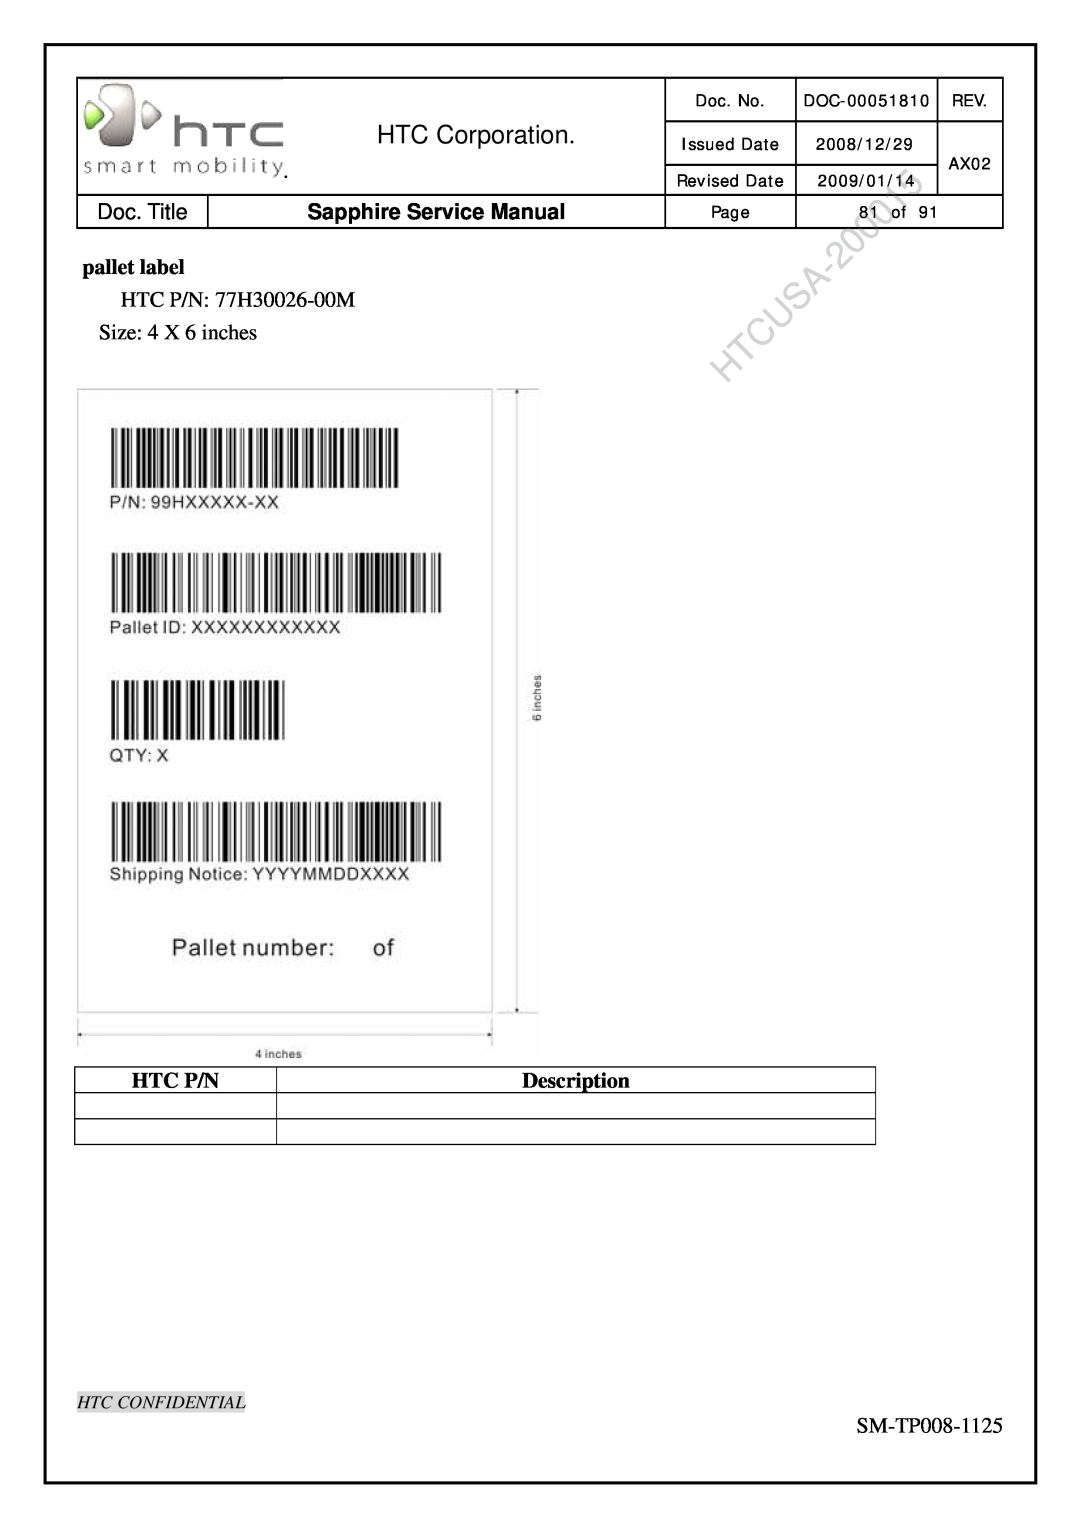 HTC SM-TP008-1125 pallet label, HTC Corporation, Sapphire Service Manual, Htc P/N, Description, Htc Confidential, Doc. No 